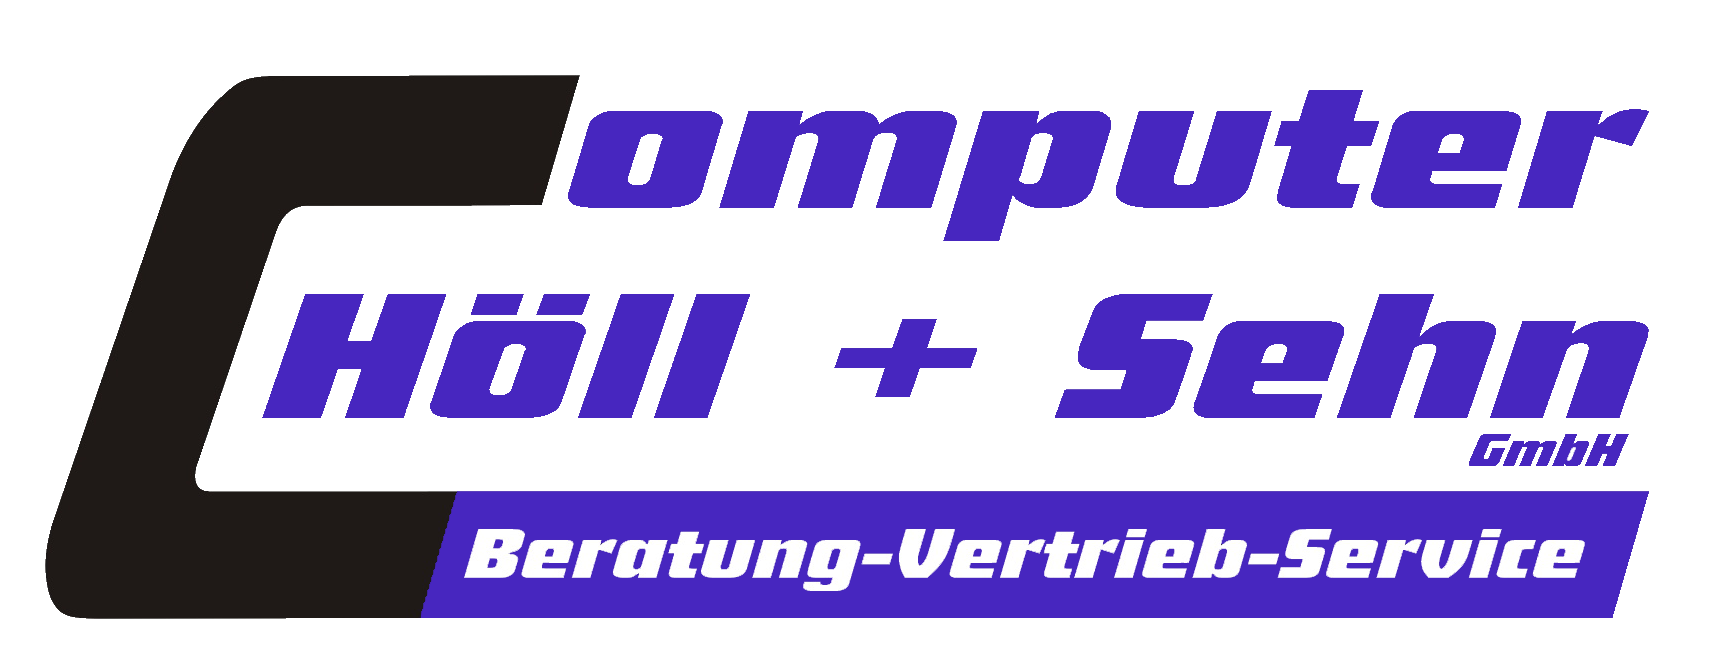 Computer Höll + Sehn GmbH